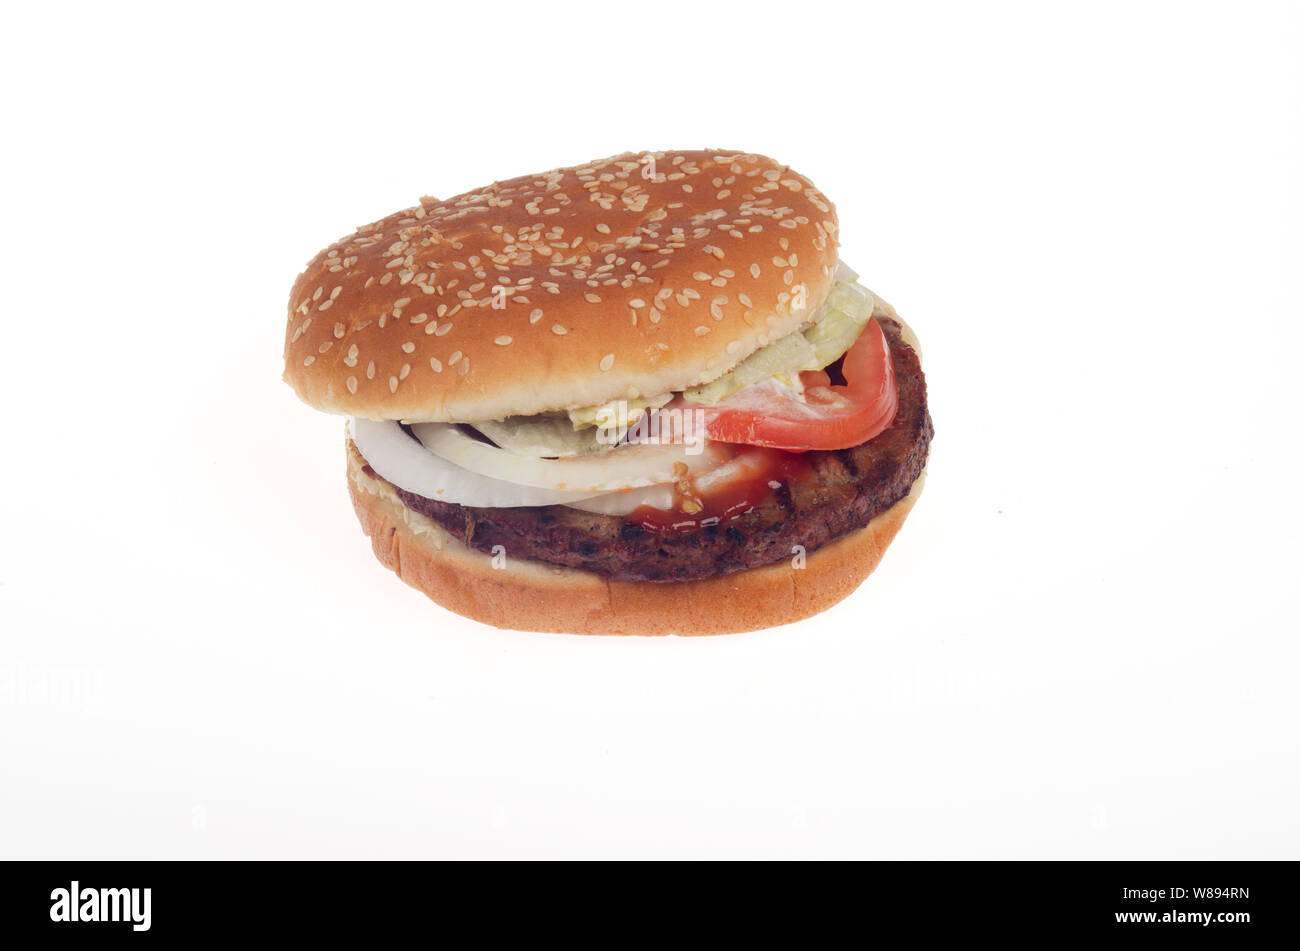 Unmöglich Whopper von Burger King, ein Vegetarier auf Basis pflanzlicher Lebensmittel Fleisch freie Alternative in den USA Veröffentlicht am August 08, 2019 Stockfoto